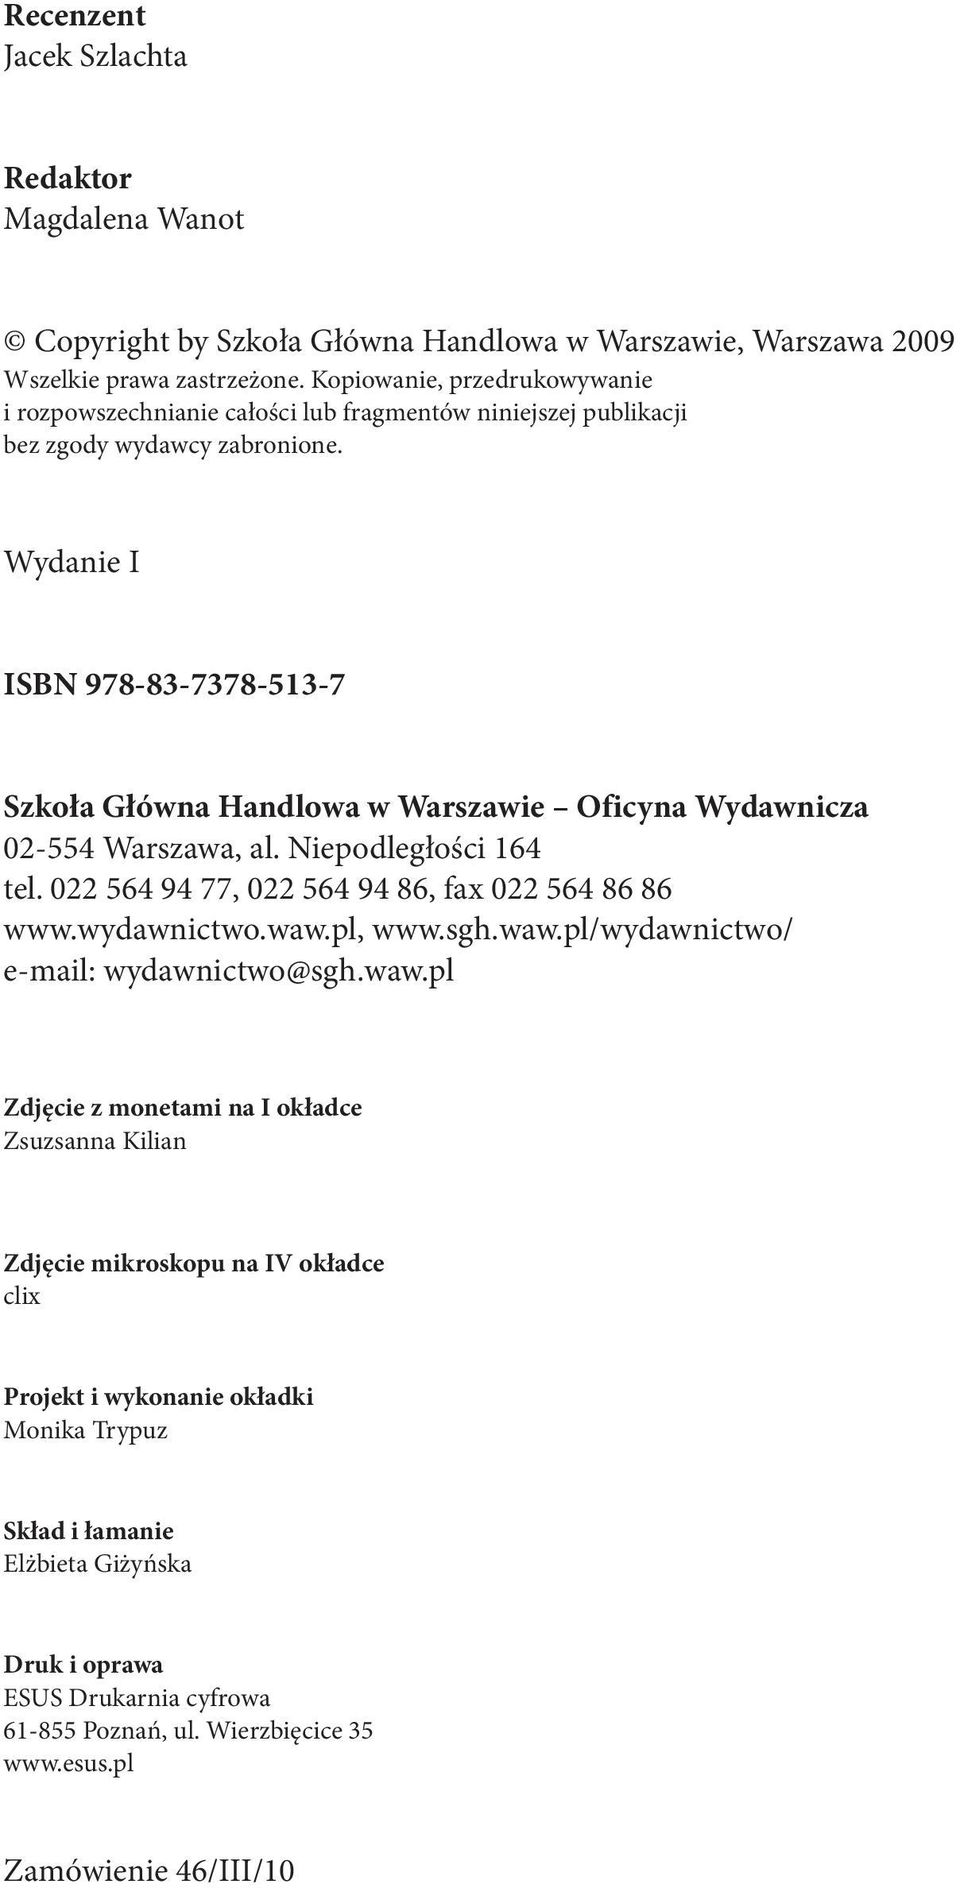 Wydanie I ISBN 978-83-7378-513-7 Szkoła Główna Handlowa w Warszawie Oficyna Wydawnicza 02-554 Warszawa, al. Niepodległości 164 tel. 022 564 94 77, 022 564 94 86, fax 022 564 86 86 www.wydawnictwo.